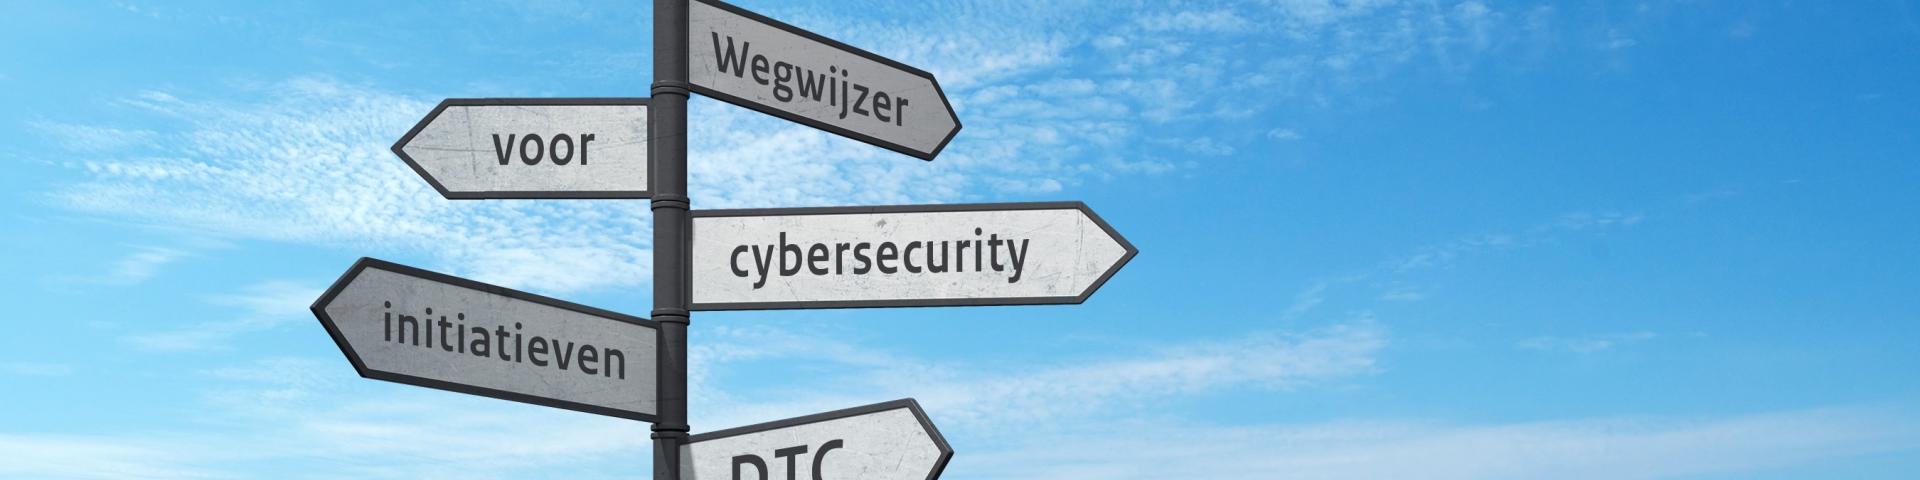 afbeelding Wegwijzer Cybersecurity initiatieven